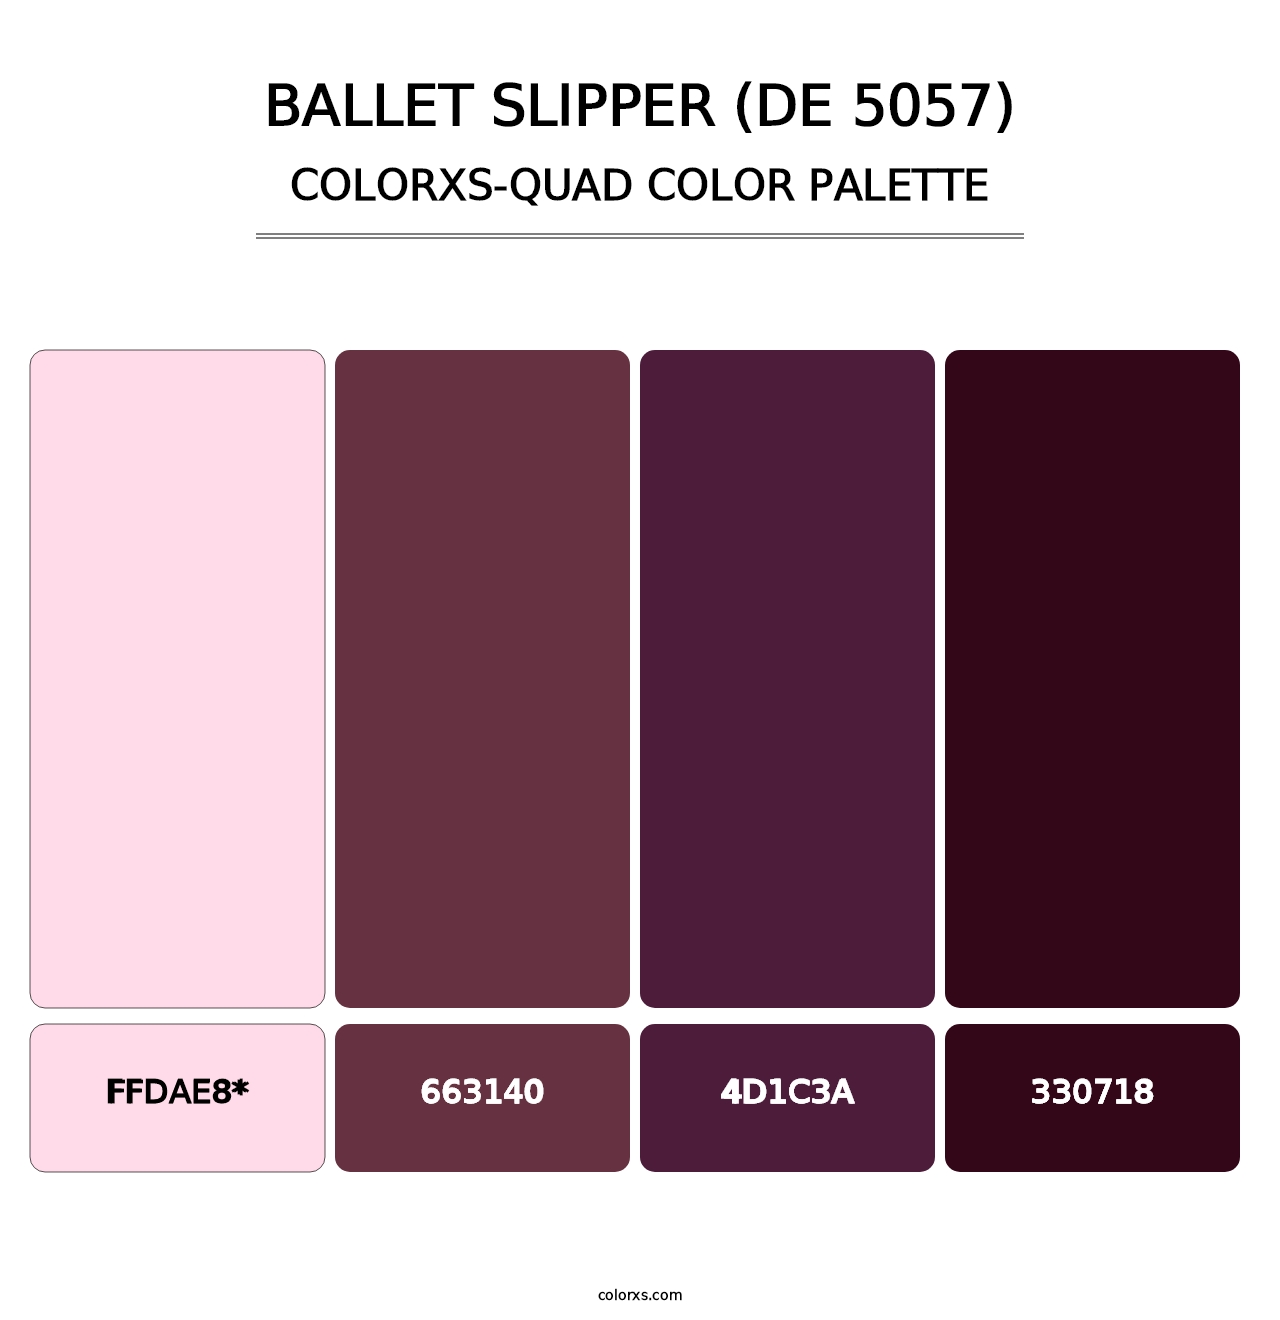 Ballet Slipper (DE 5057) - Colorxs Quad Palette